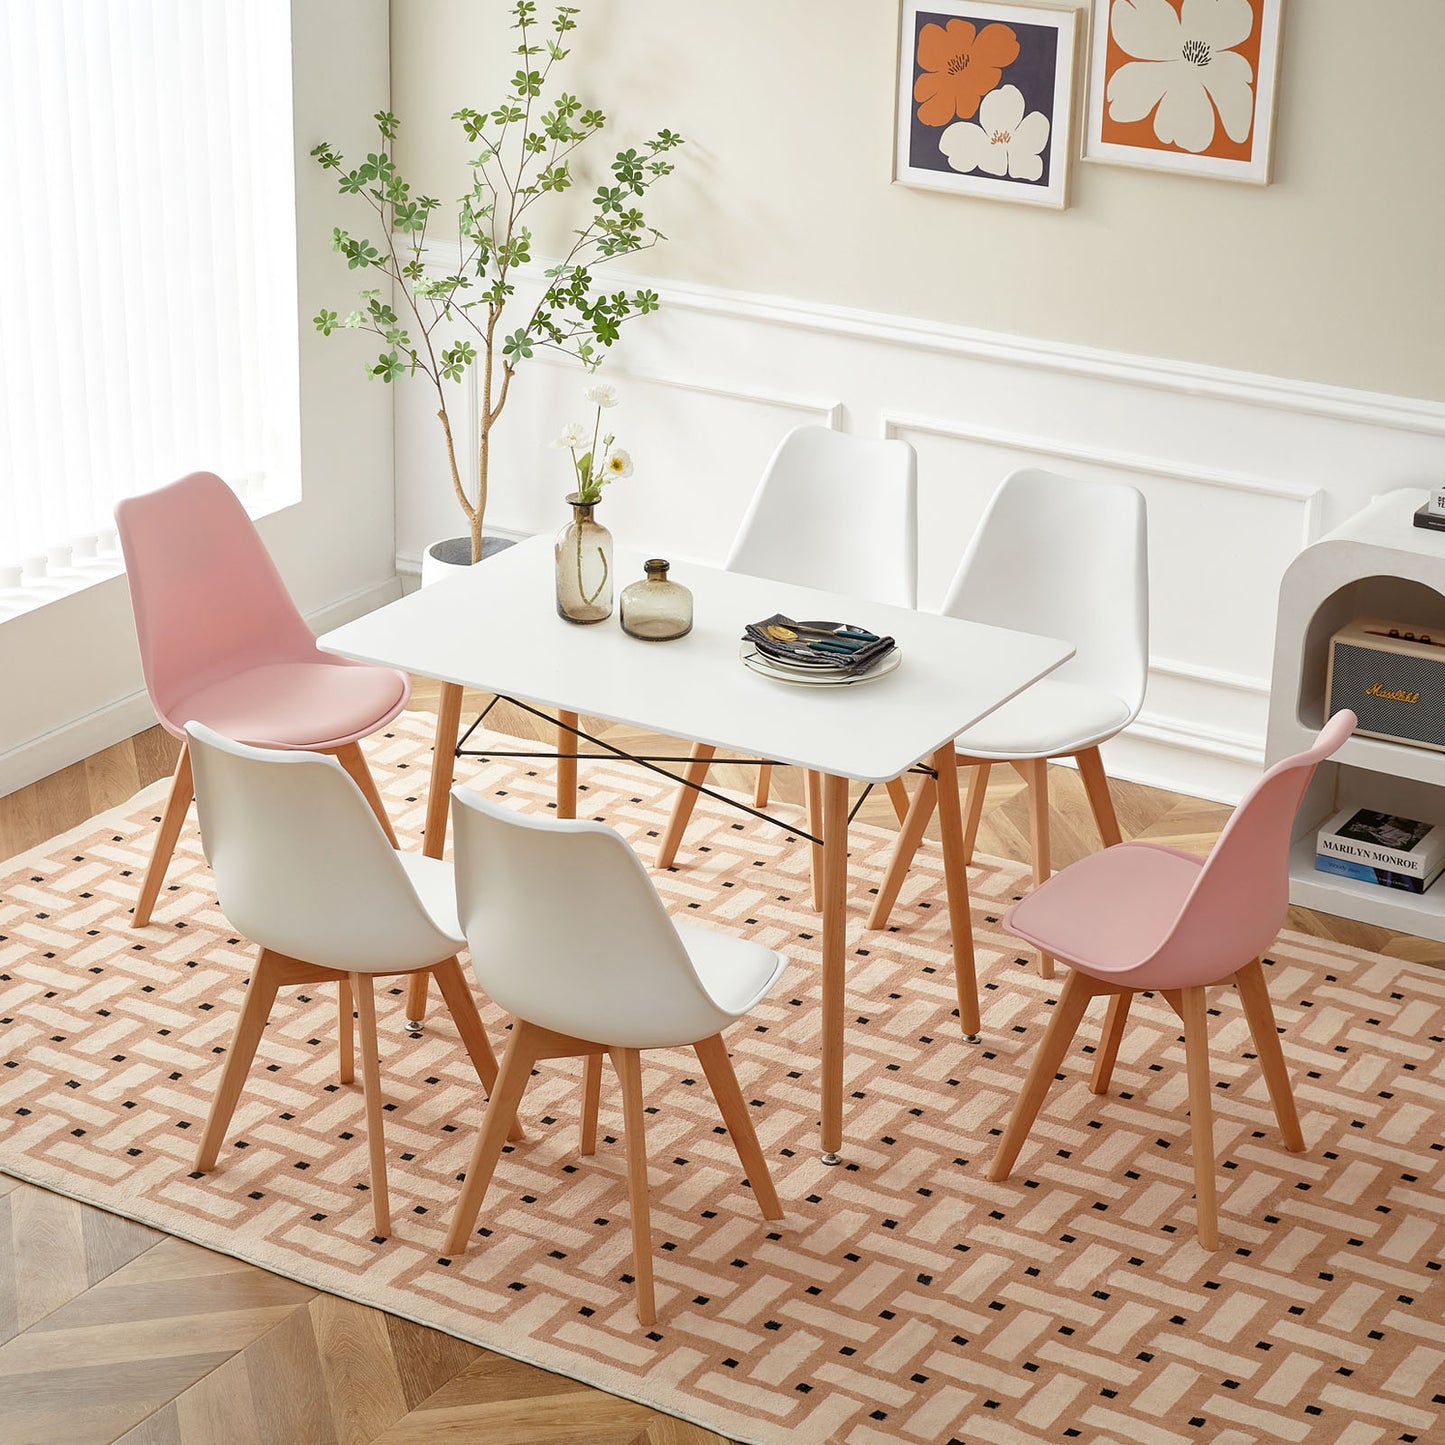 Lot de 6 chaises Scandinaves au design contemporain pour salle à manger - Mélange de couleurs 4 Blanc + 2 Rose